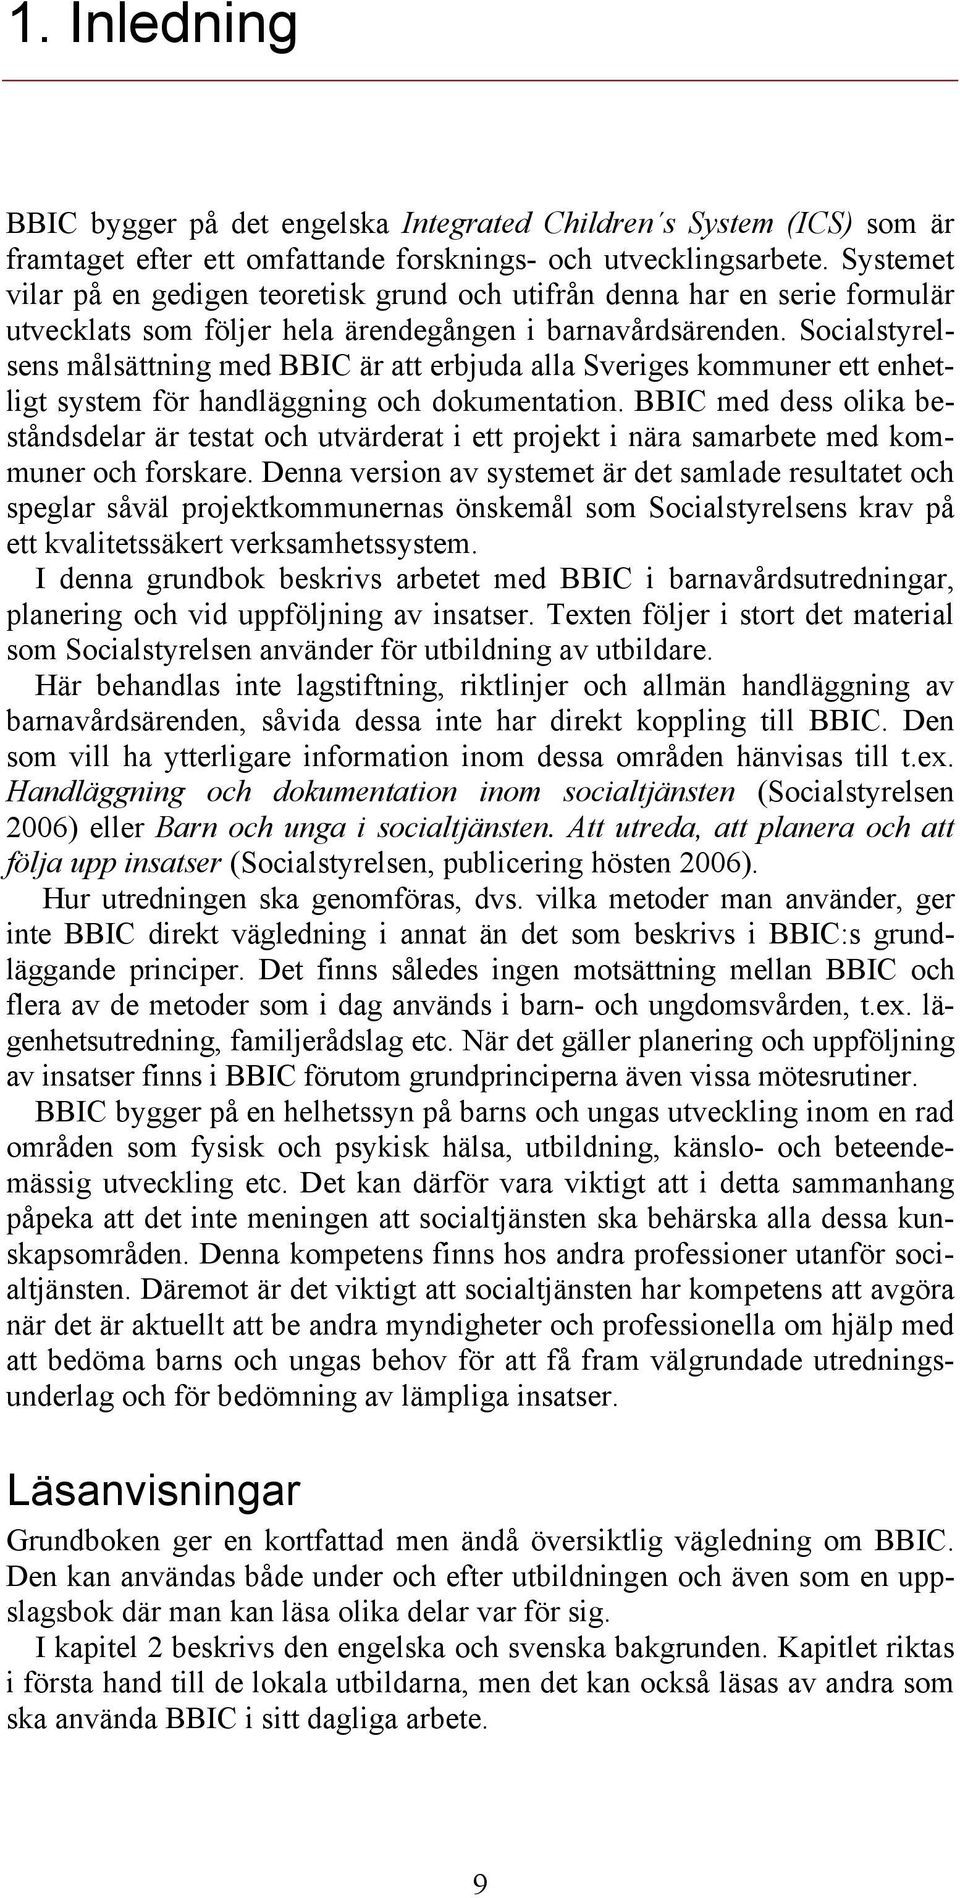 Socialstyrelsens målsättning med BBIC är att erbjuda alla Sveriges kommuner ett enhetligt system för handläggning och dokumentation.